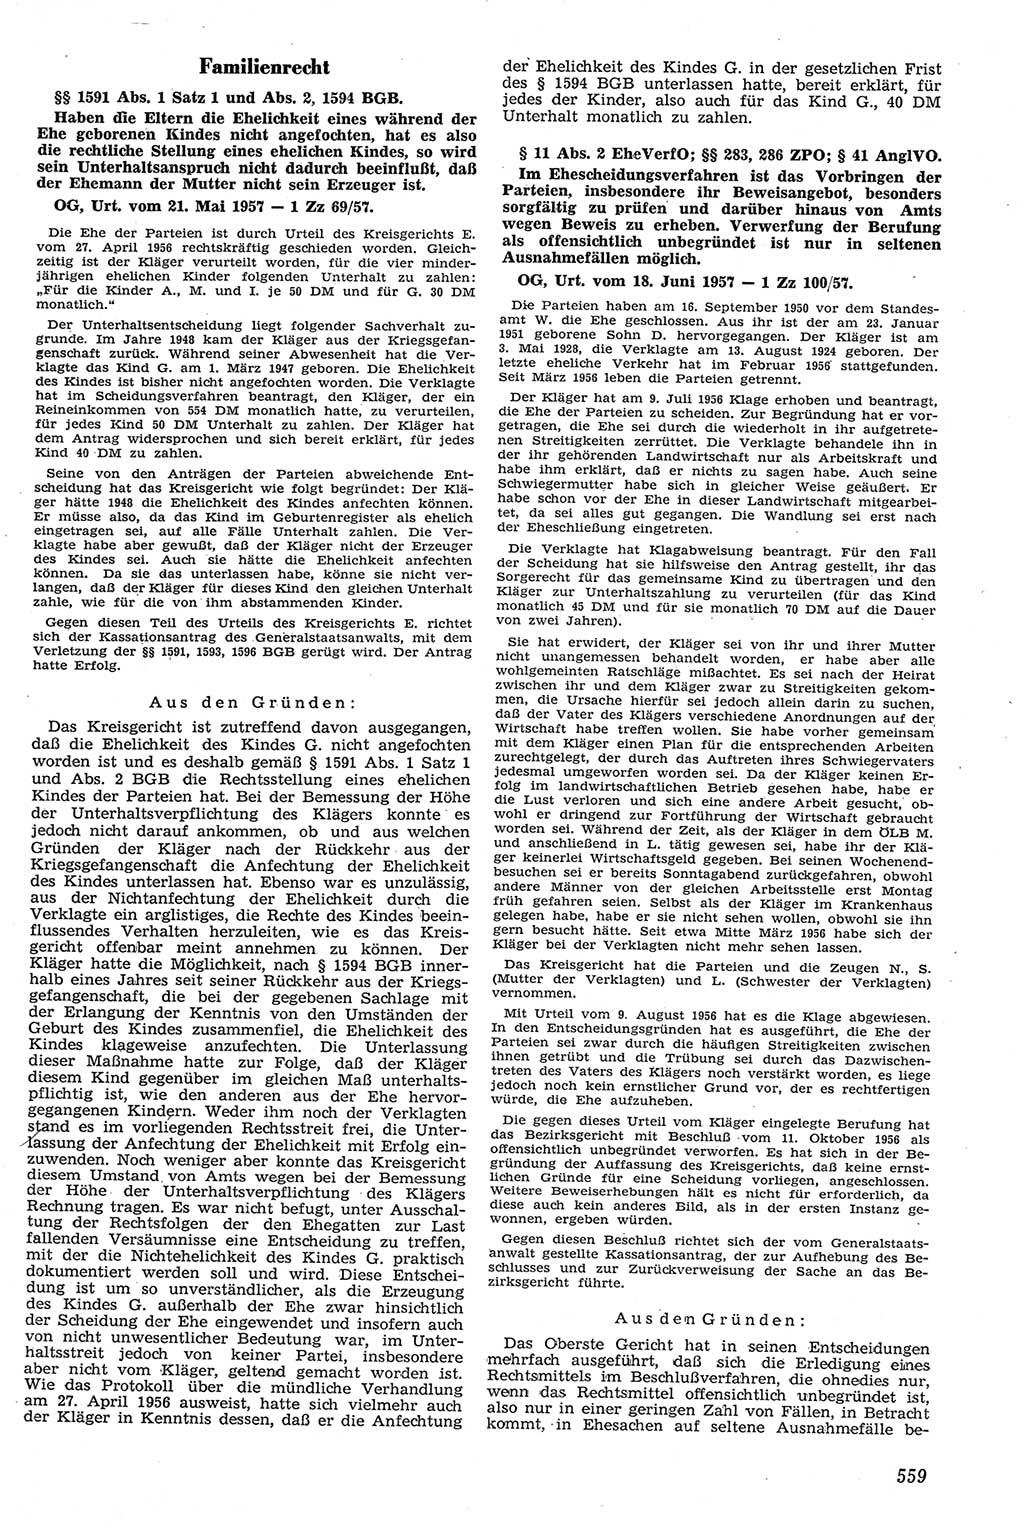 Neue Justiz (NJ), Zeitschrift für Recht und Rechtswissenschaft [Deutsche Demokratische Republik (DDR)], 11. Jahrgang 1957, Seite 559 (NJ DDR 1957, S. 559)